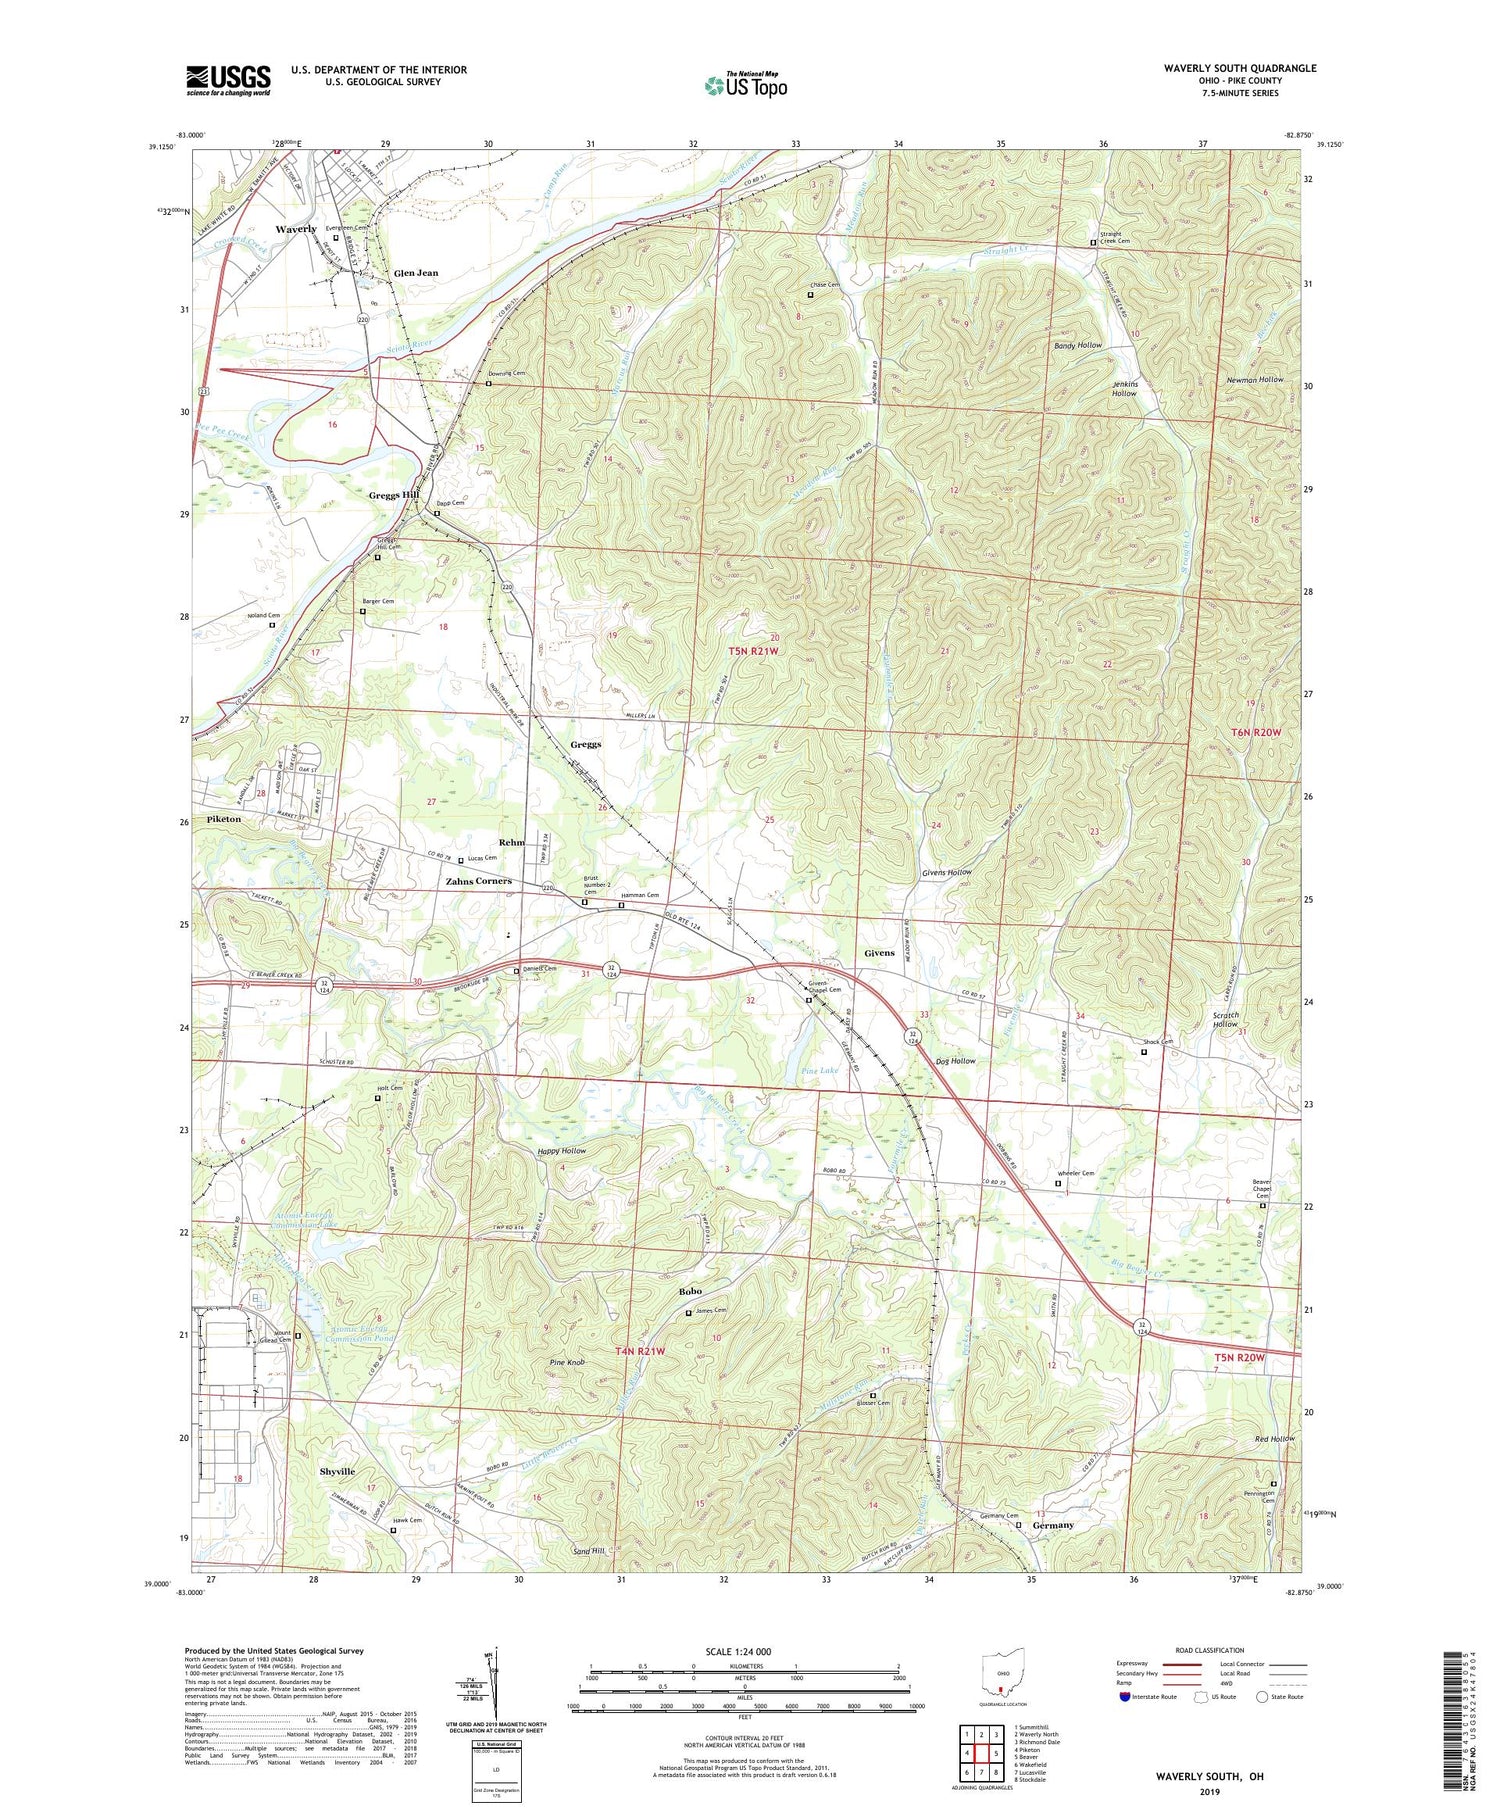 Waverly South Ohio US Topo Map Image